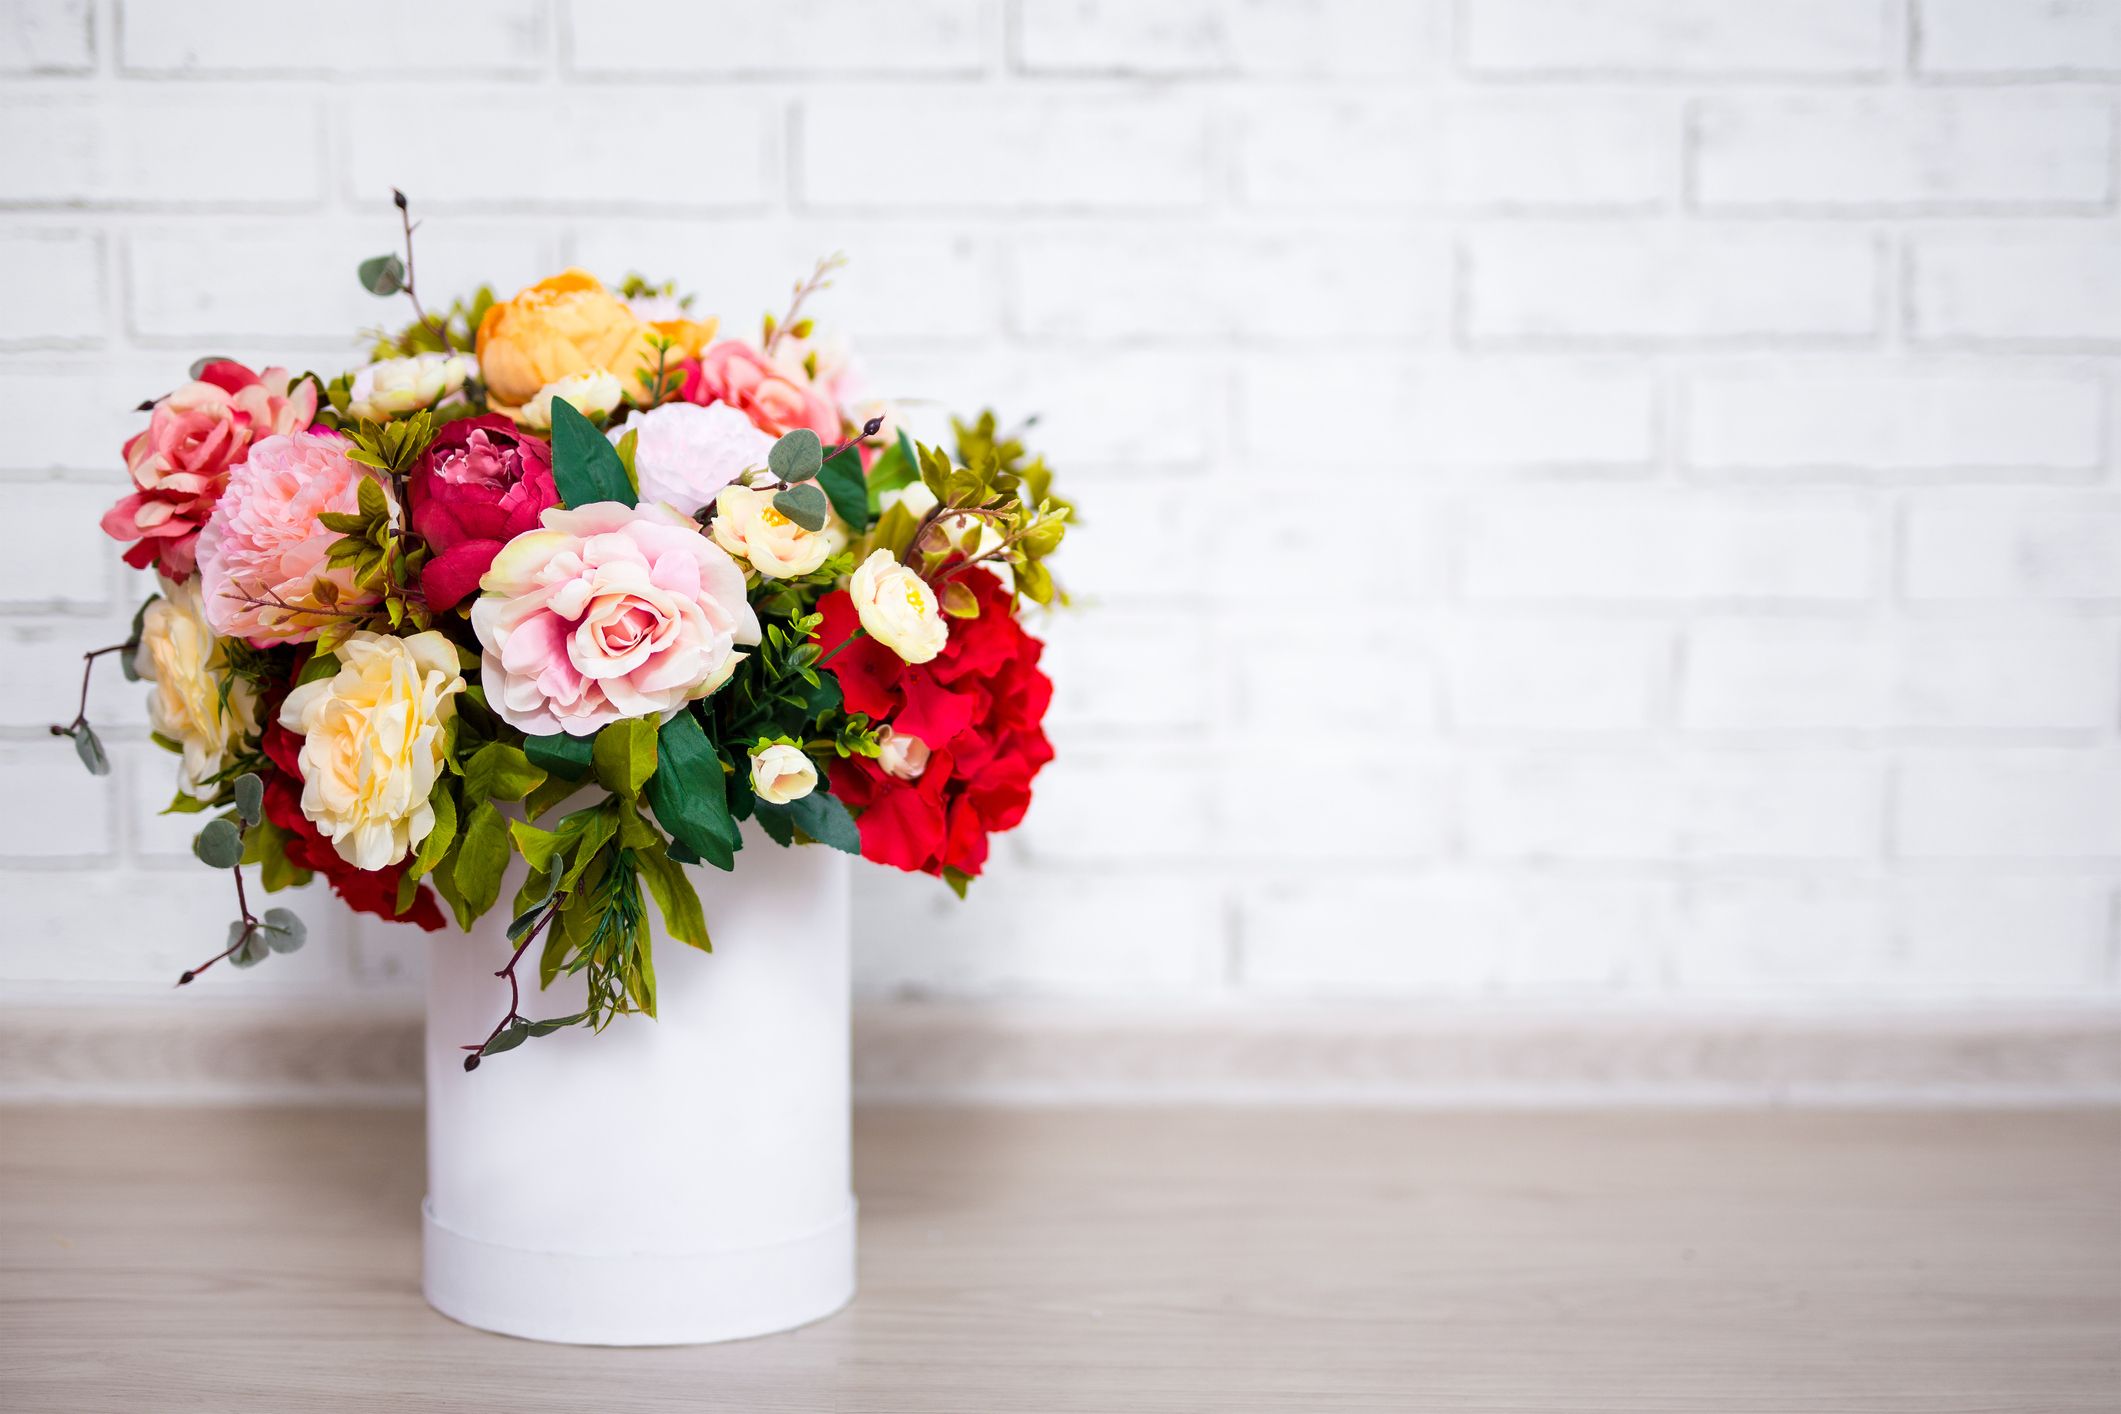 How To Make Flowers Last Longer In Vase